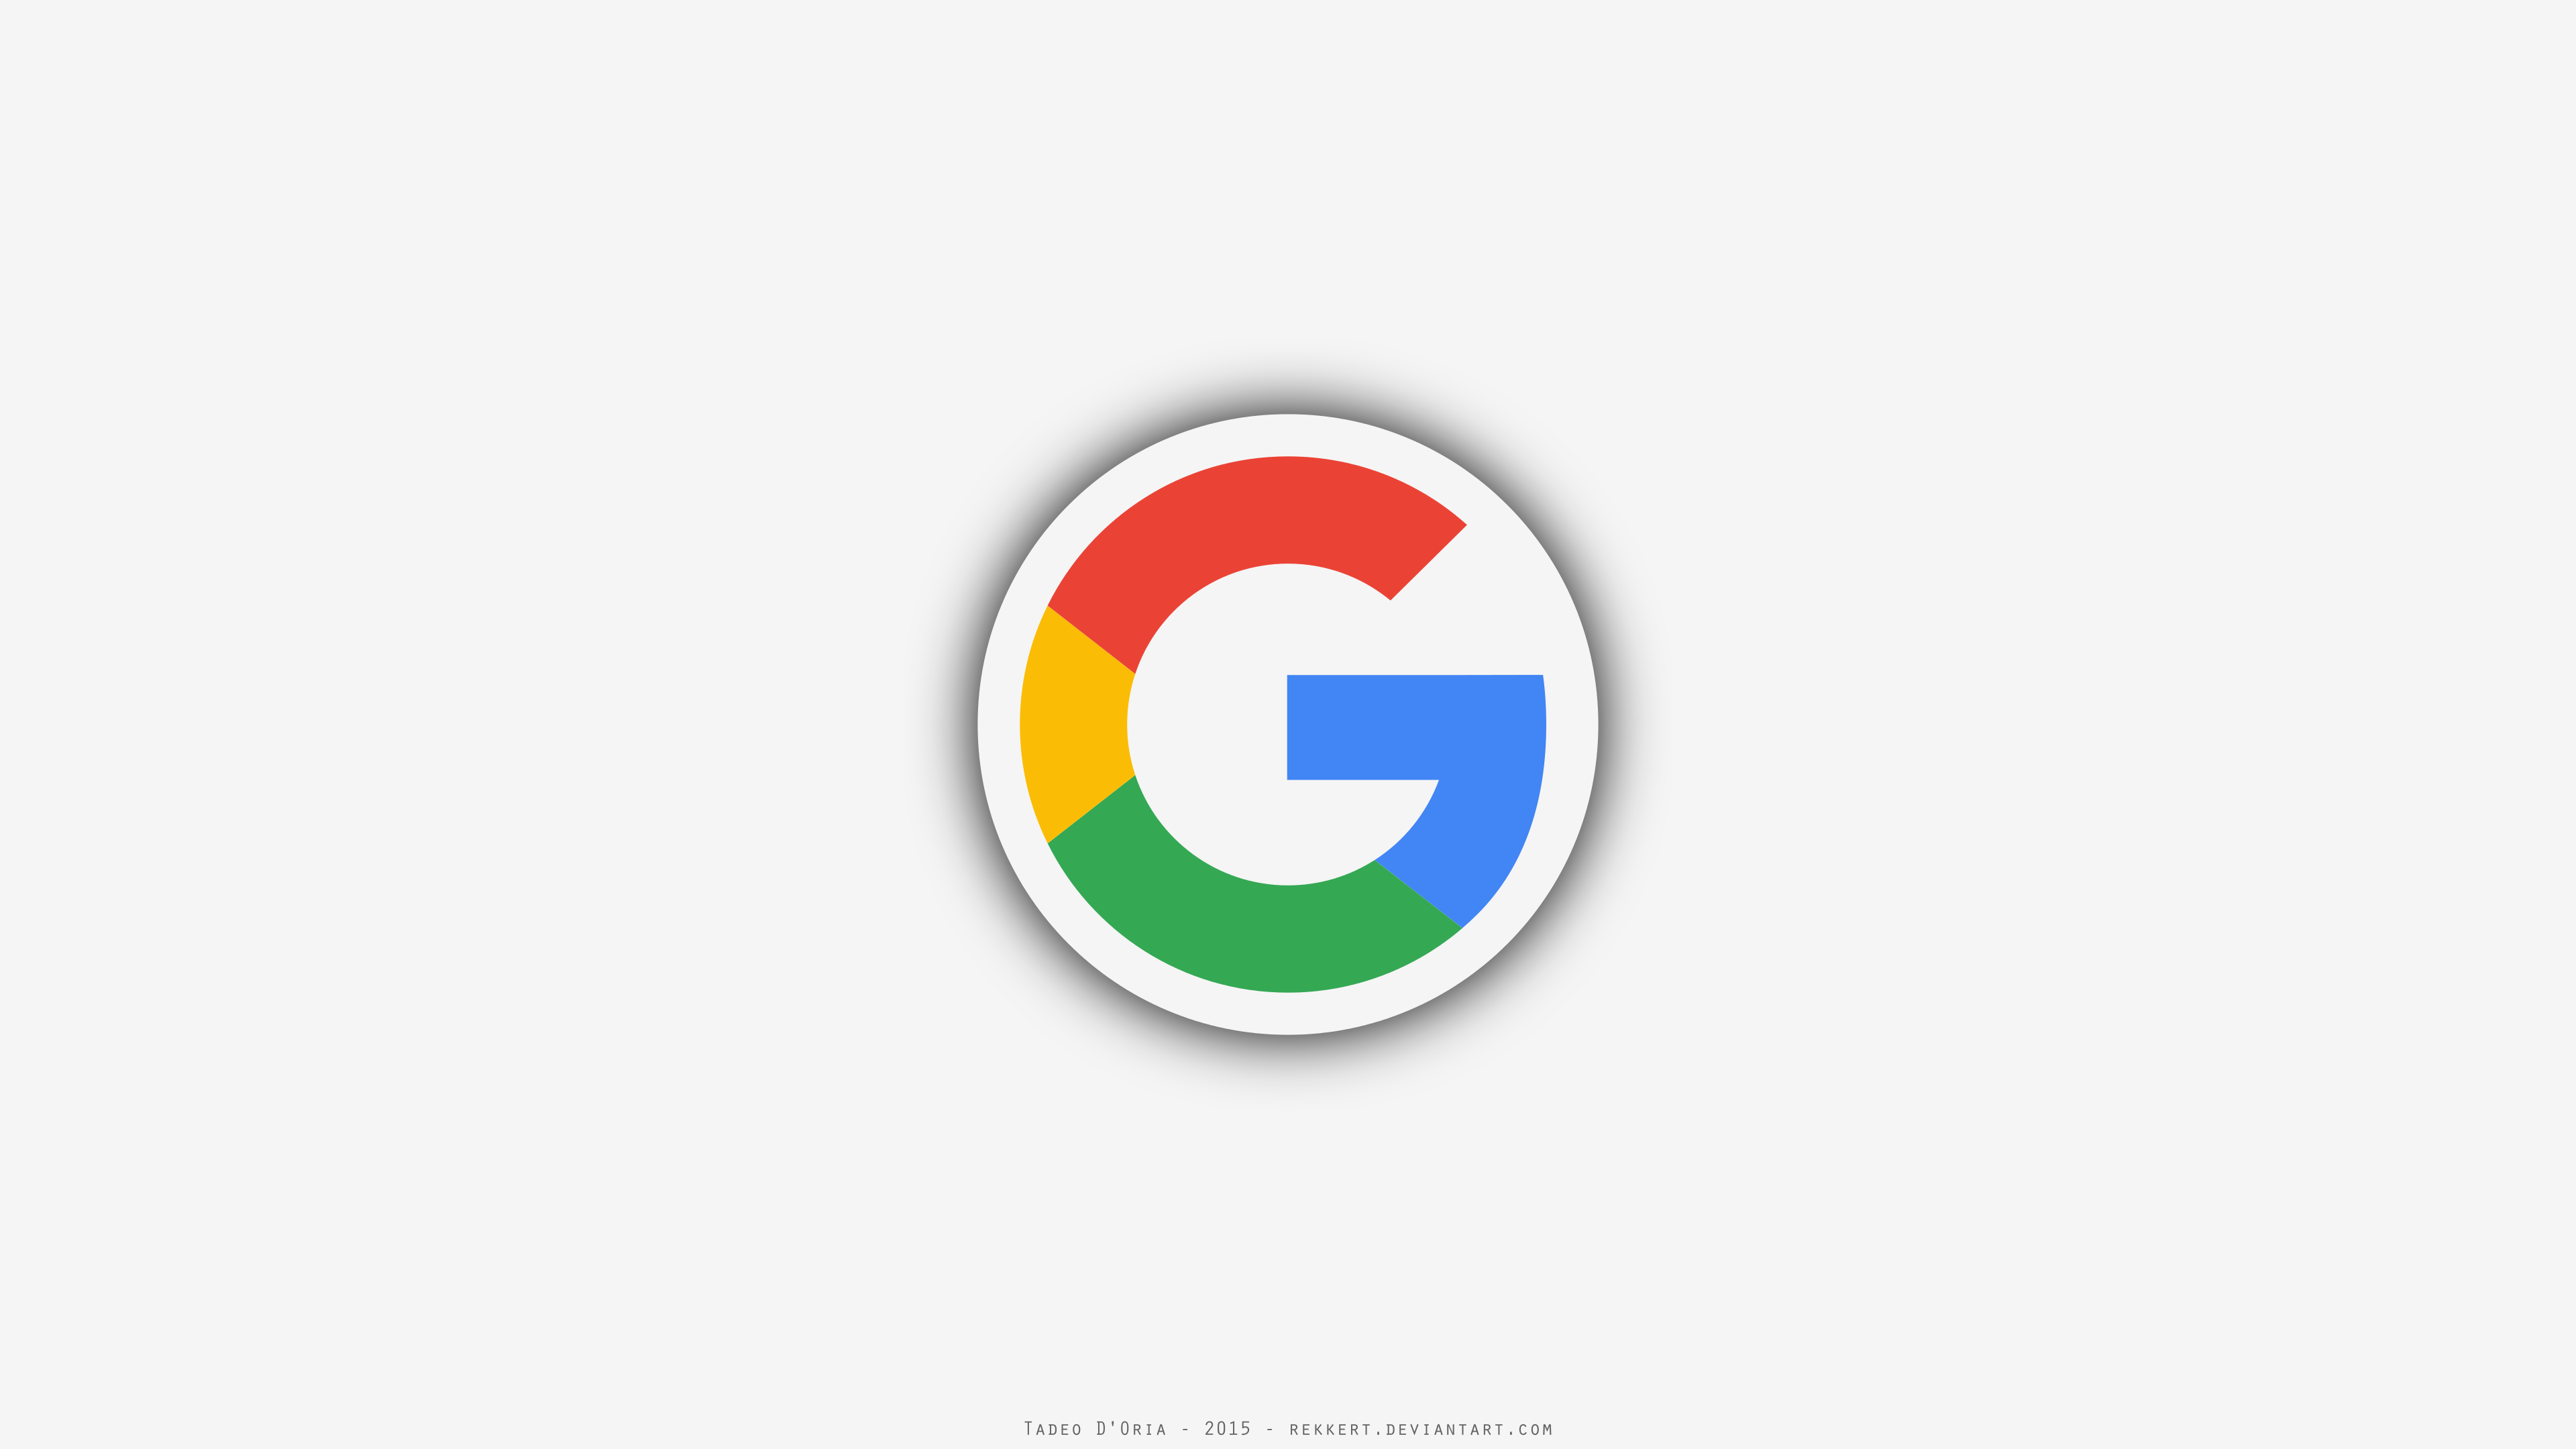 File:Google Adsense logo.png